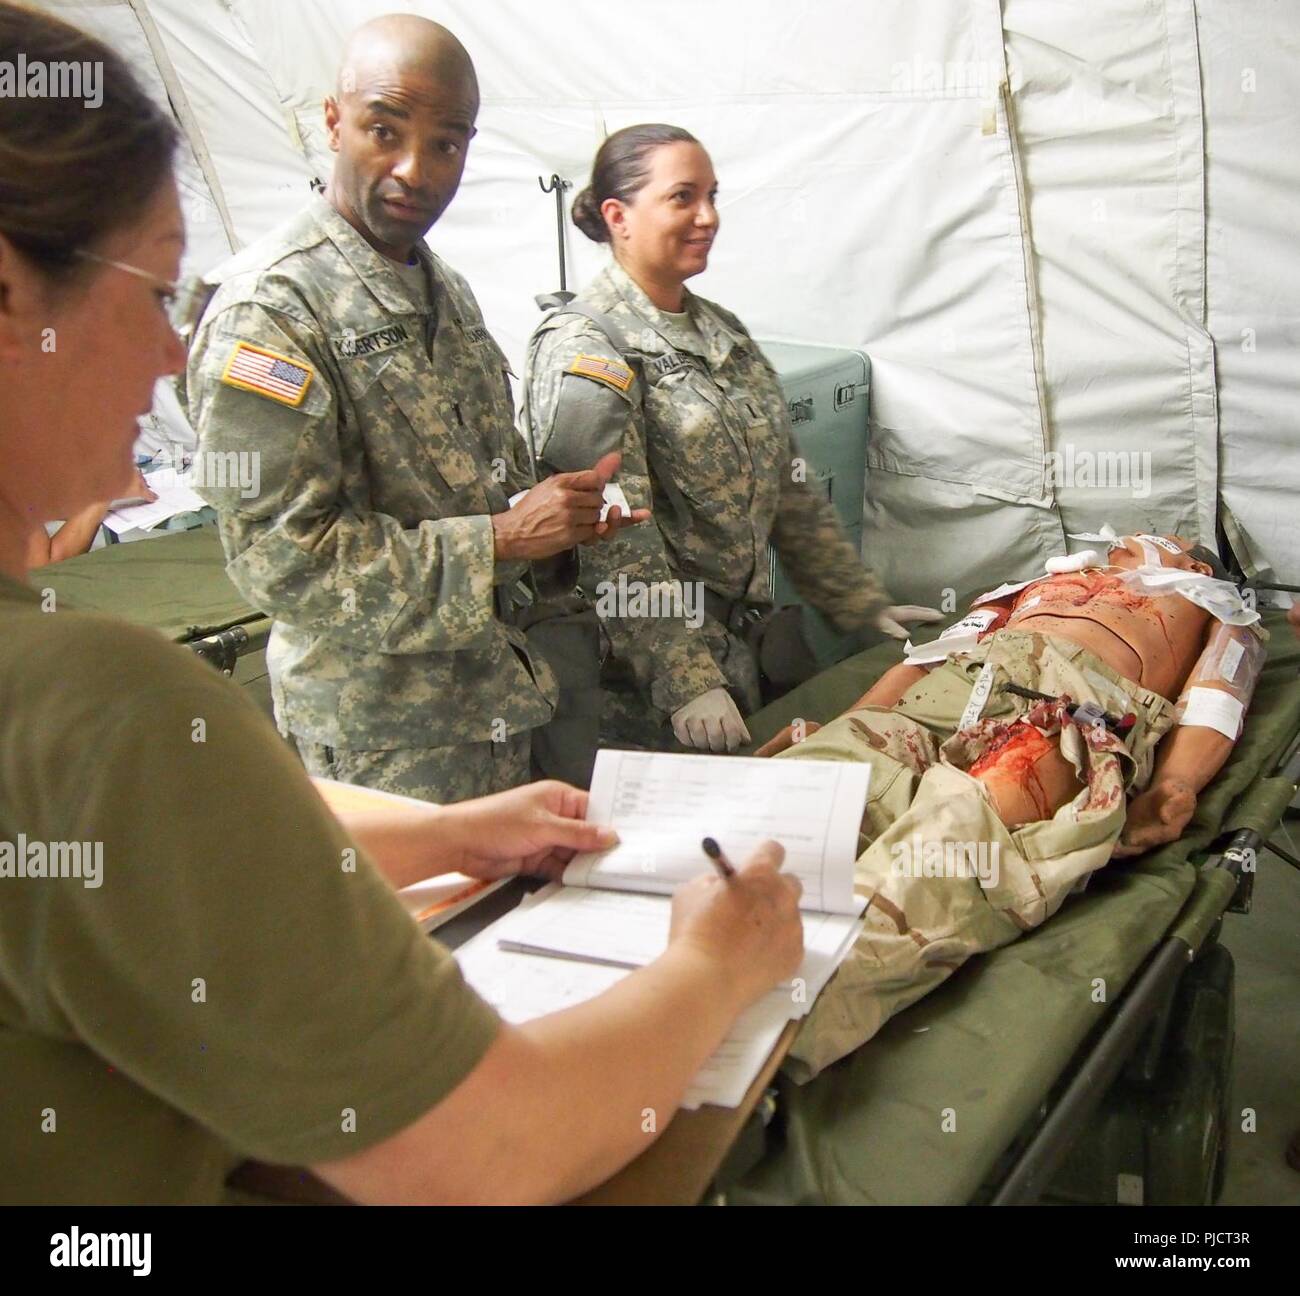 Us-Armee Soldaten zu Buchen 228th Combat Support Hospital zugewiesen, basierend aus San Antonio, Texas, für die medizinische Versorgung für eine simulierte Patienten während der Global Medic CSTX 91-18-01, am Fort Hunter Liggett, Kalifornien, 21. Juli 2018. CSTX 91-18-01 ist ein Kampf Support Training übung, die sicherstellt, dass America's Army Reserve Einheiten und Soldaten ausgebildet sind und bereit, auf kurze bereitstellen - Bekanntmachung und fähig, Bekämpfung bereit, und tödlichen Fähigkeiten zur Unterstützung der Armee und unsere gemeinsamen Partner überall in der Welt. Stockfoto